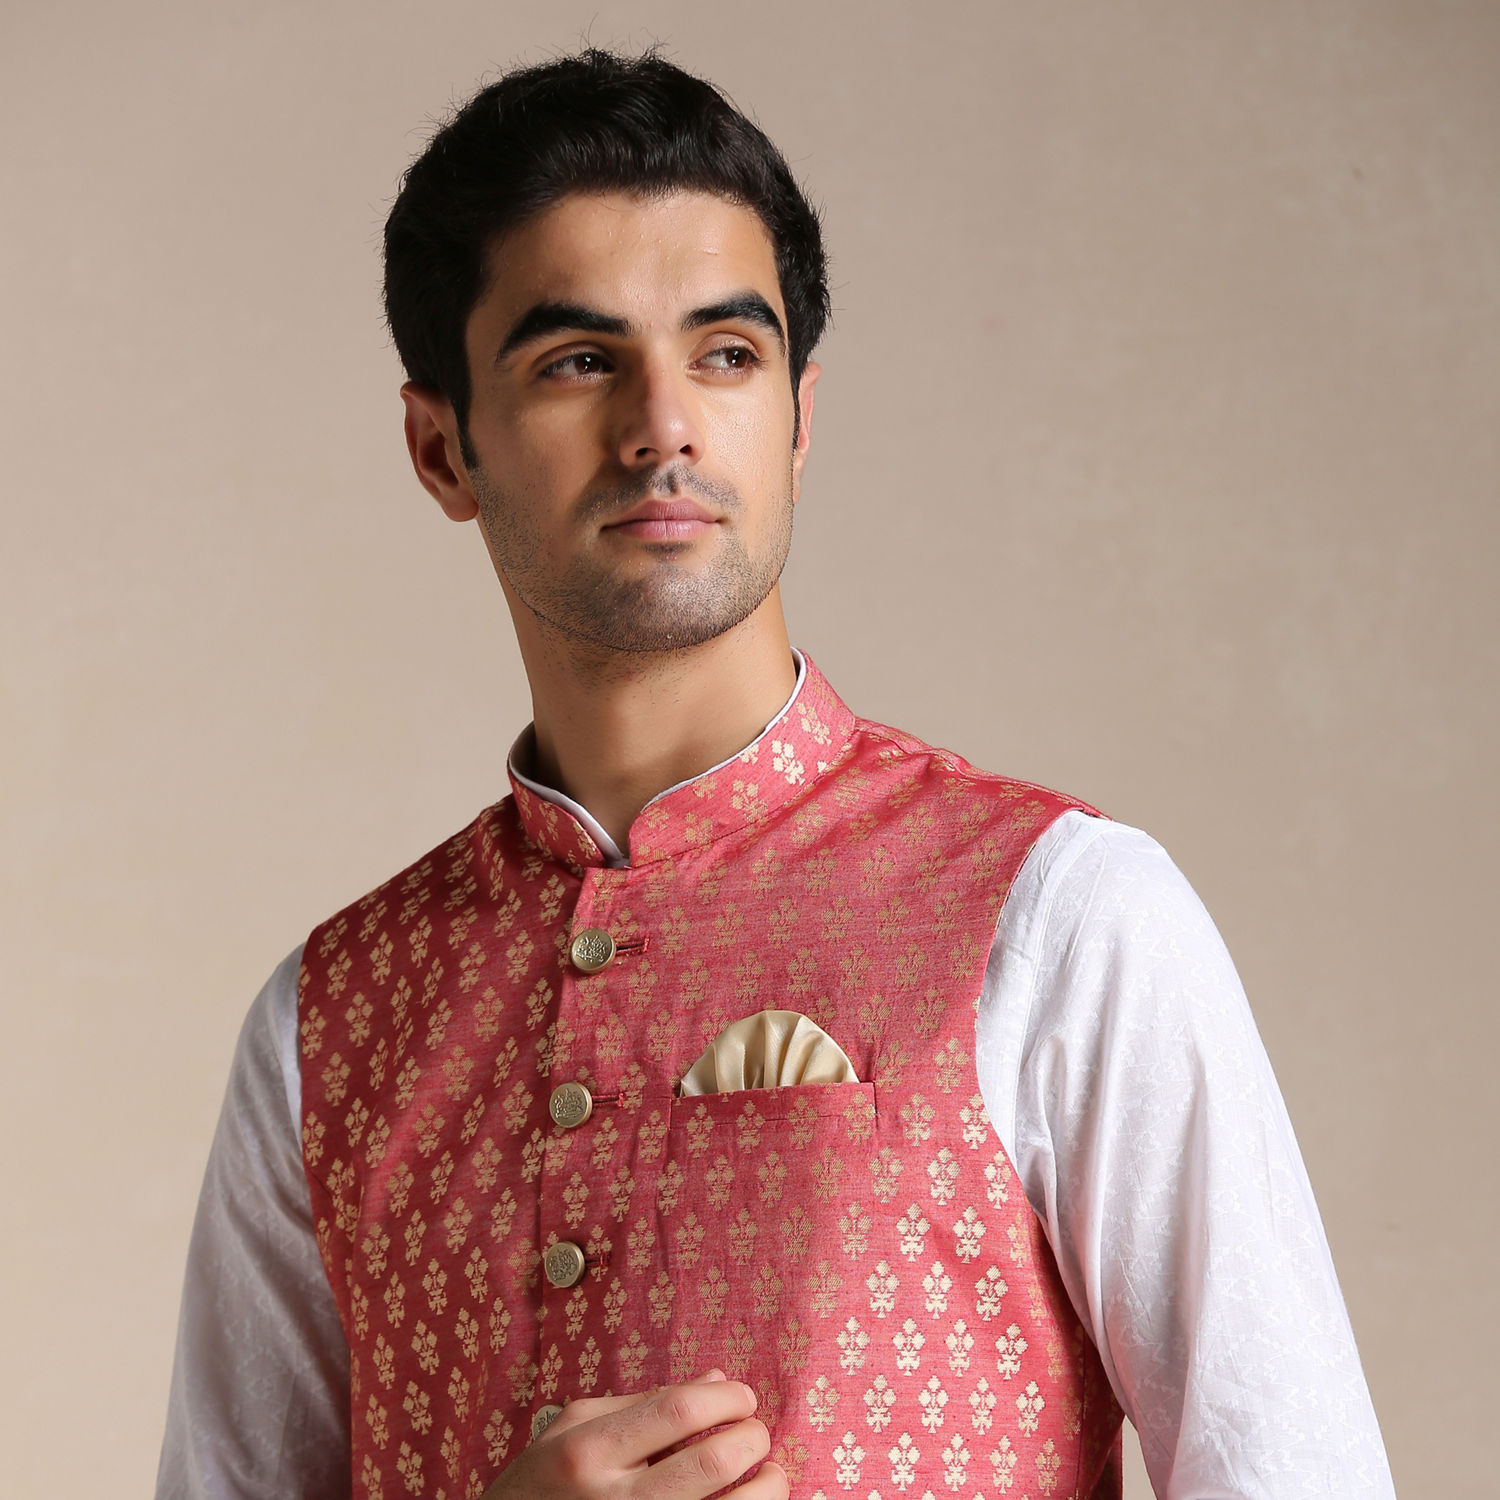 Breathtaking Kurta Pajama Designs With Jacket: the Manyavar Mohey Style!